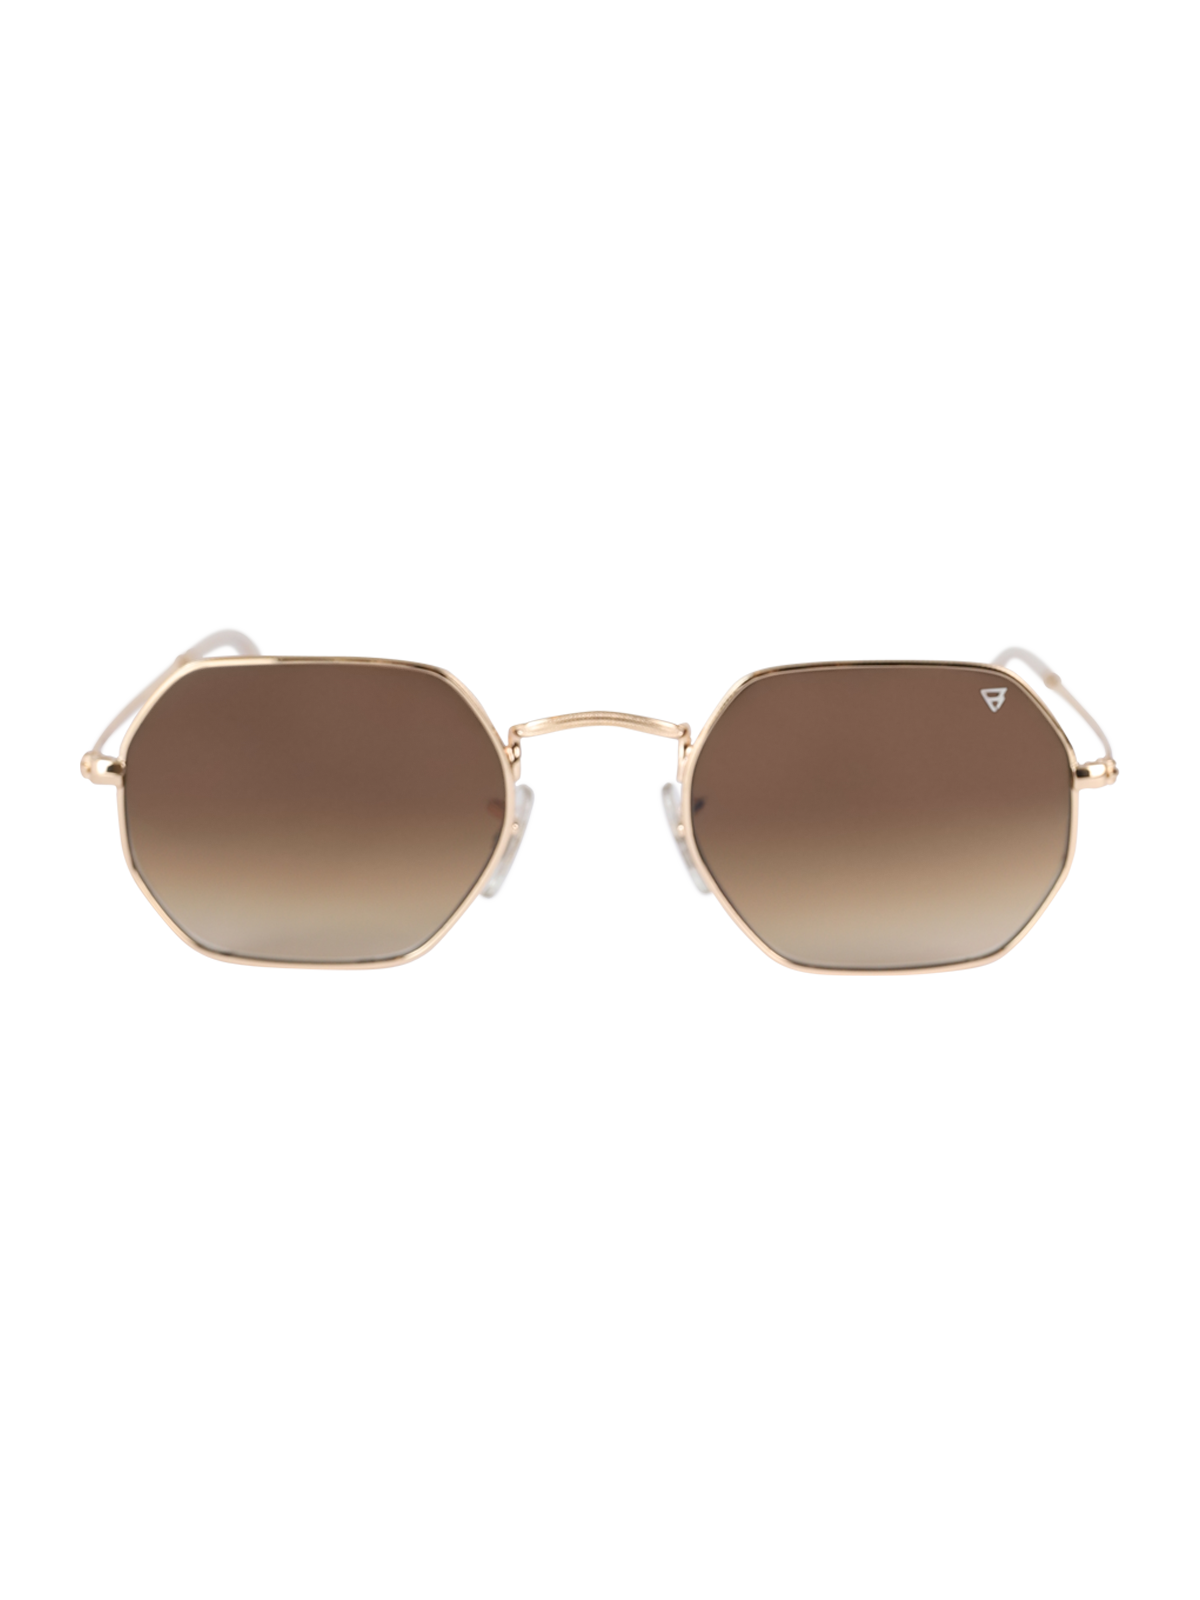 Biarritz Unisex Sunglasses | Gold